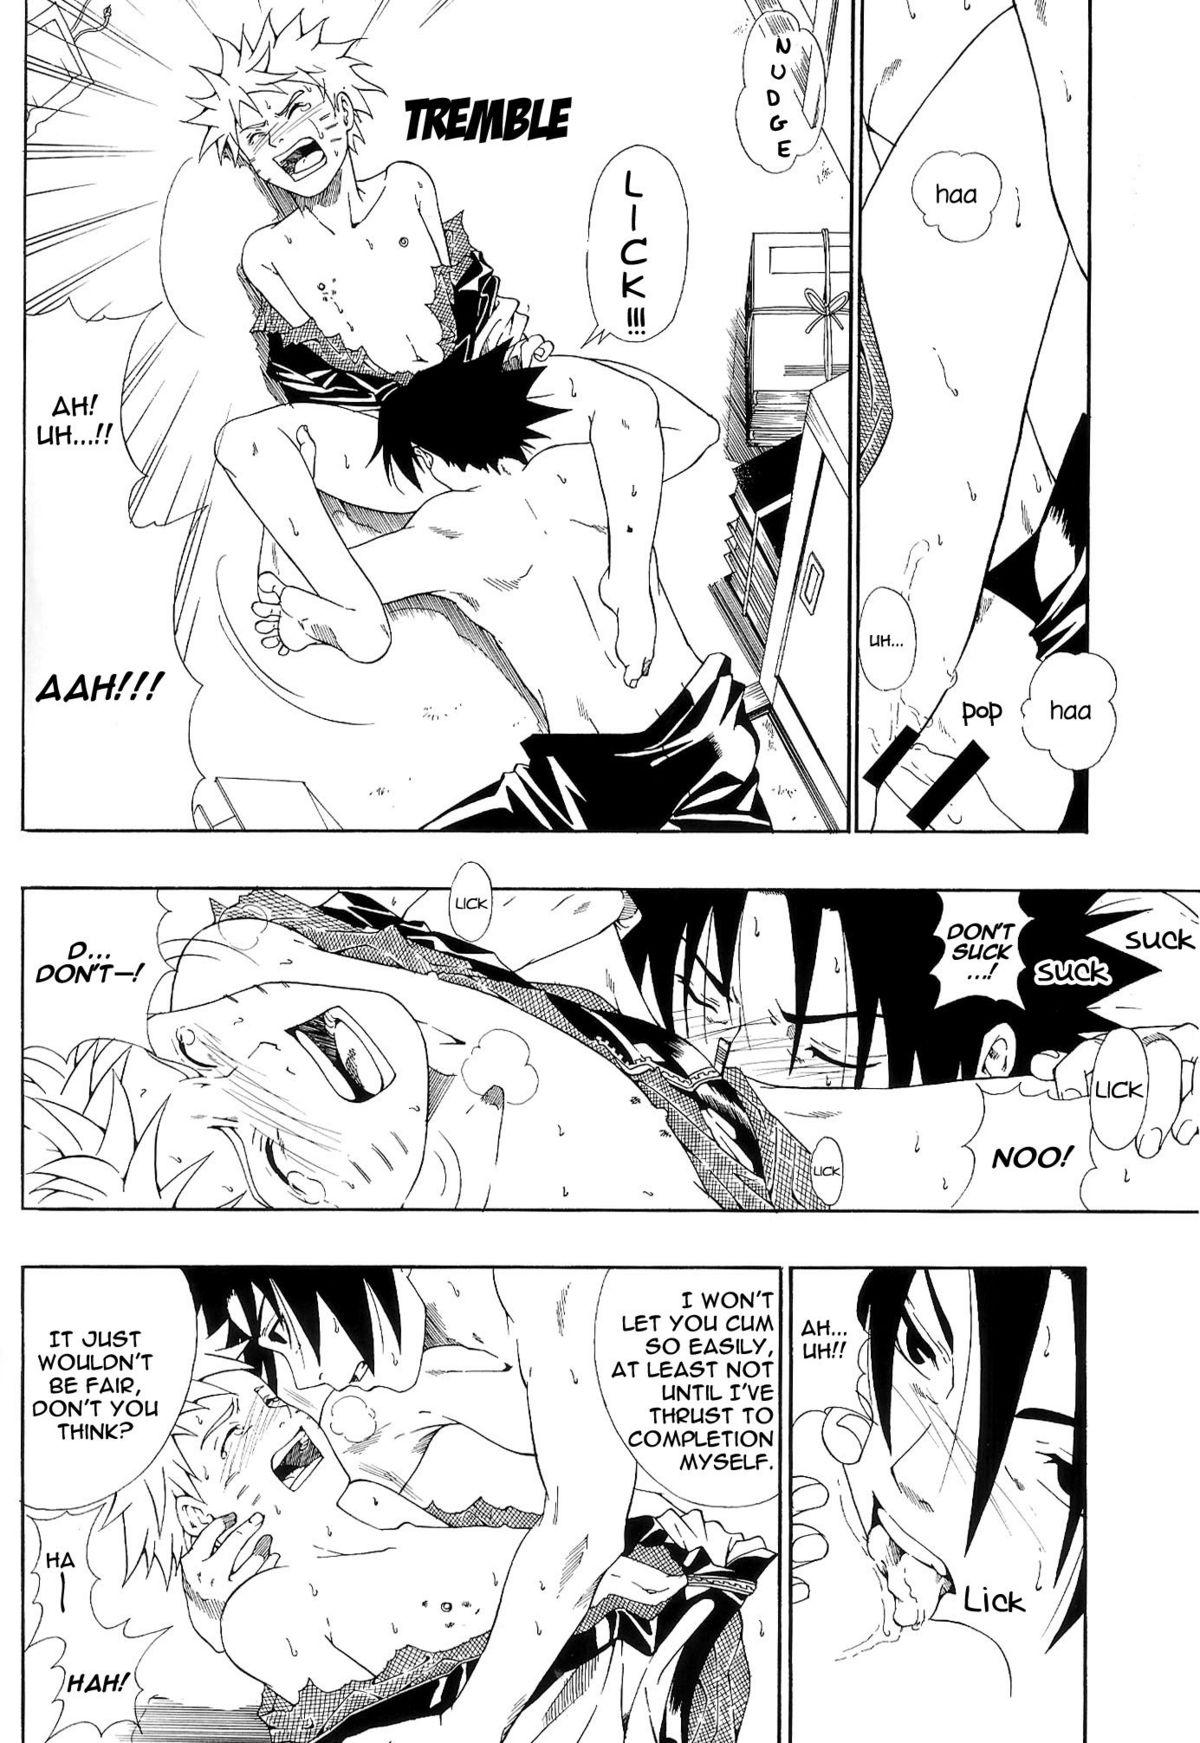 Hidden Camera ERO ERO²: Volume 1.5 (NARUTO) [Sasuke X Naruto] YAOI -ENG- - Naruto Vintage - Page 9